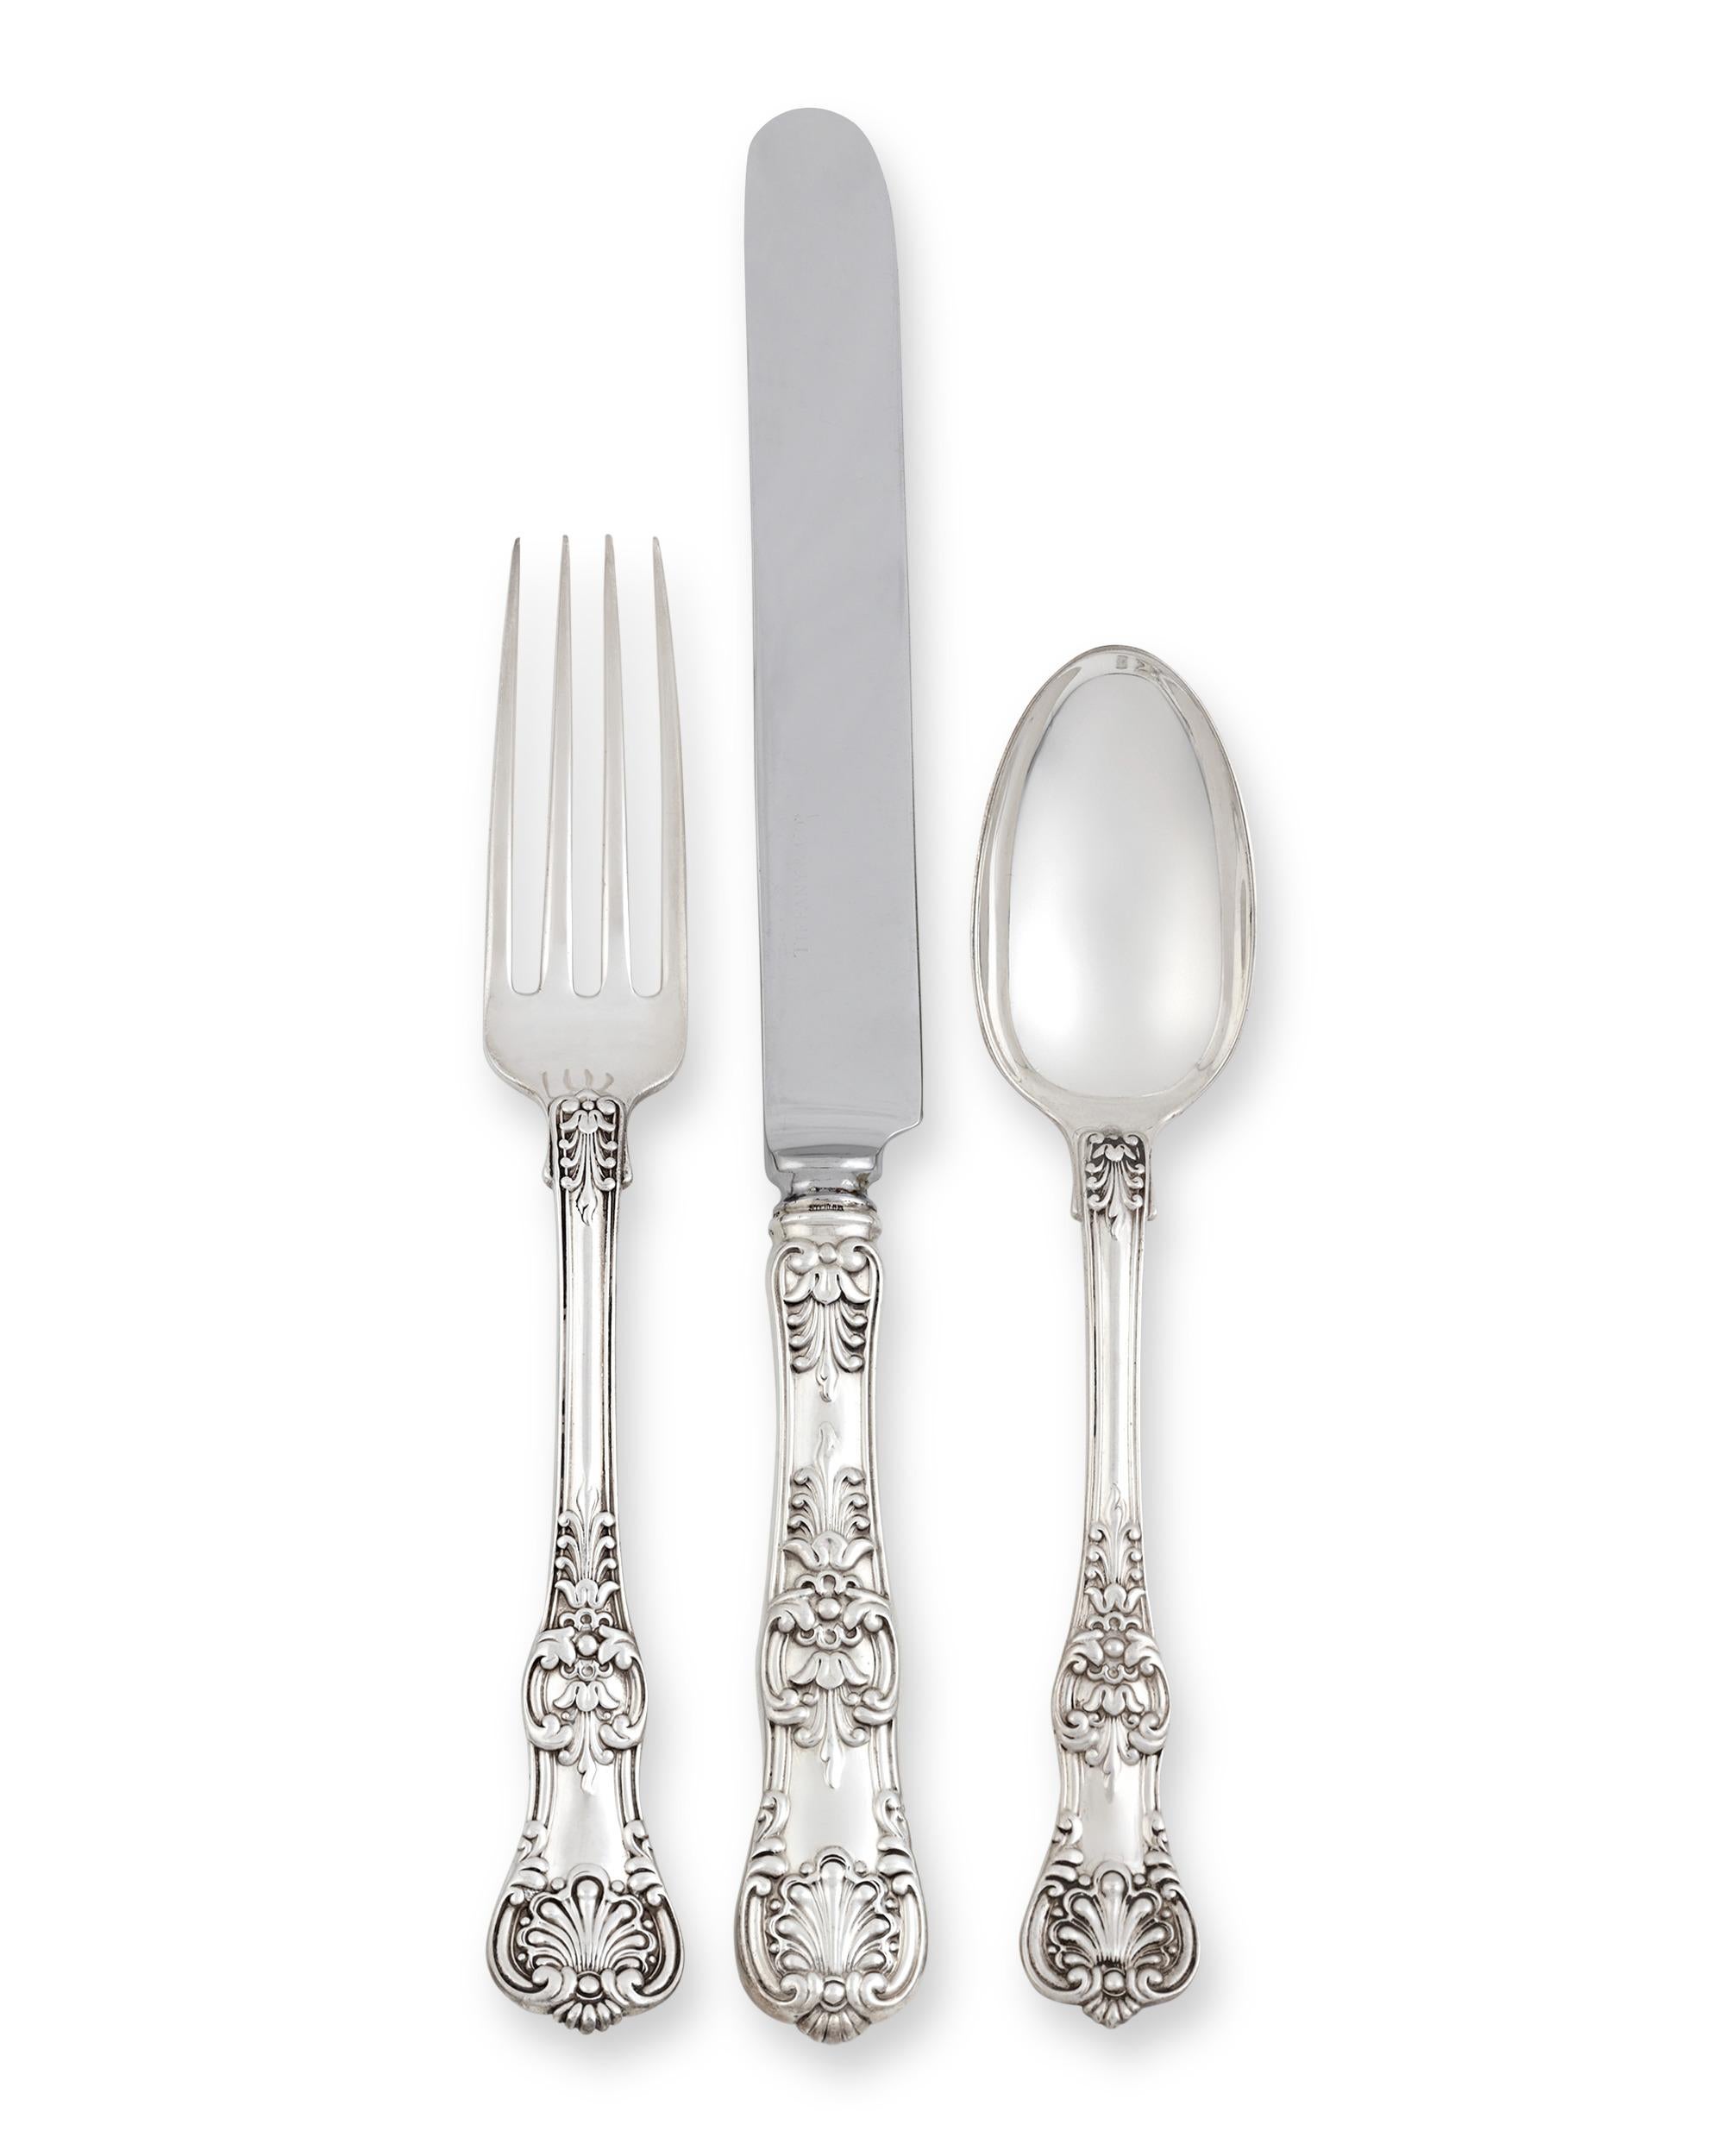 tiffany cutlery